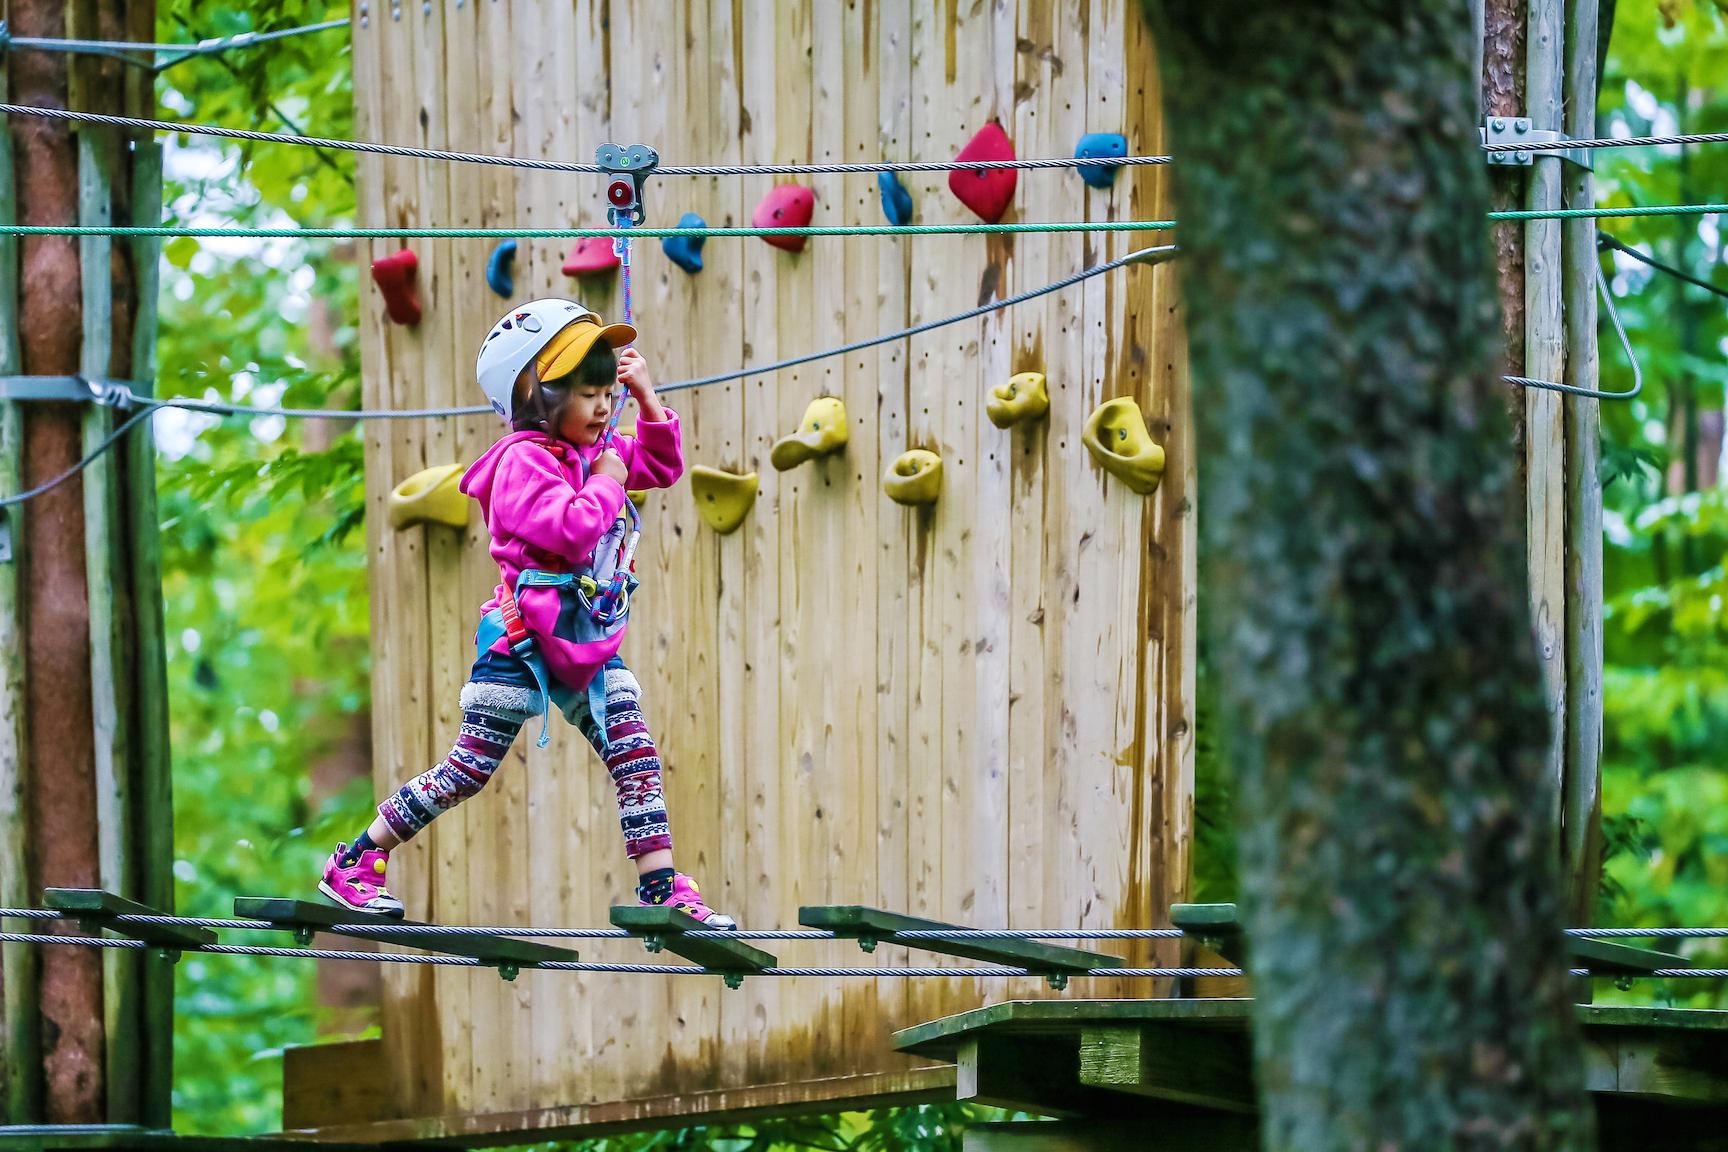 木と木の間に張られたトリムをロープをつかみながら懸命に渡るヘルメットを付けた女の子の写真。奥にはボルダリングの遊具が見えます。